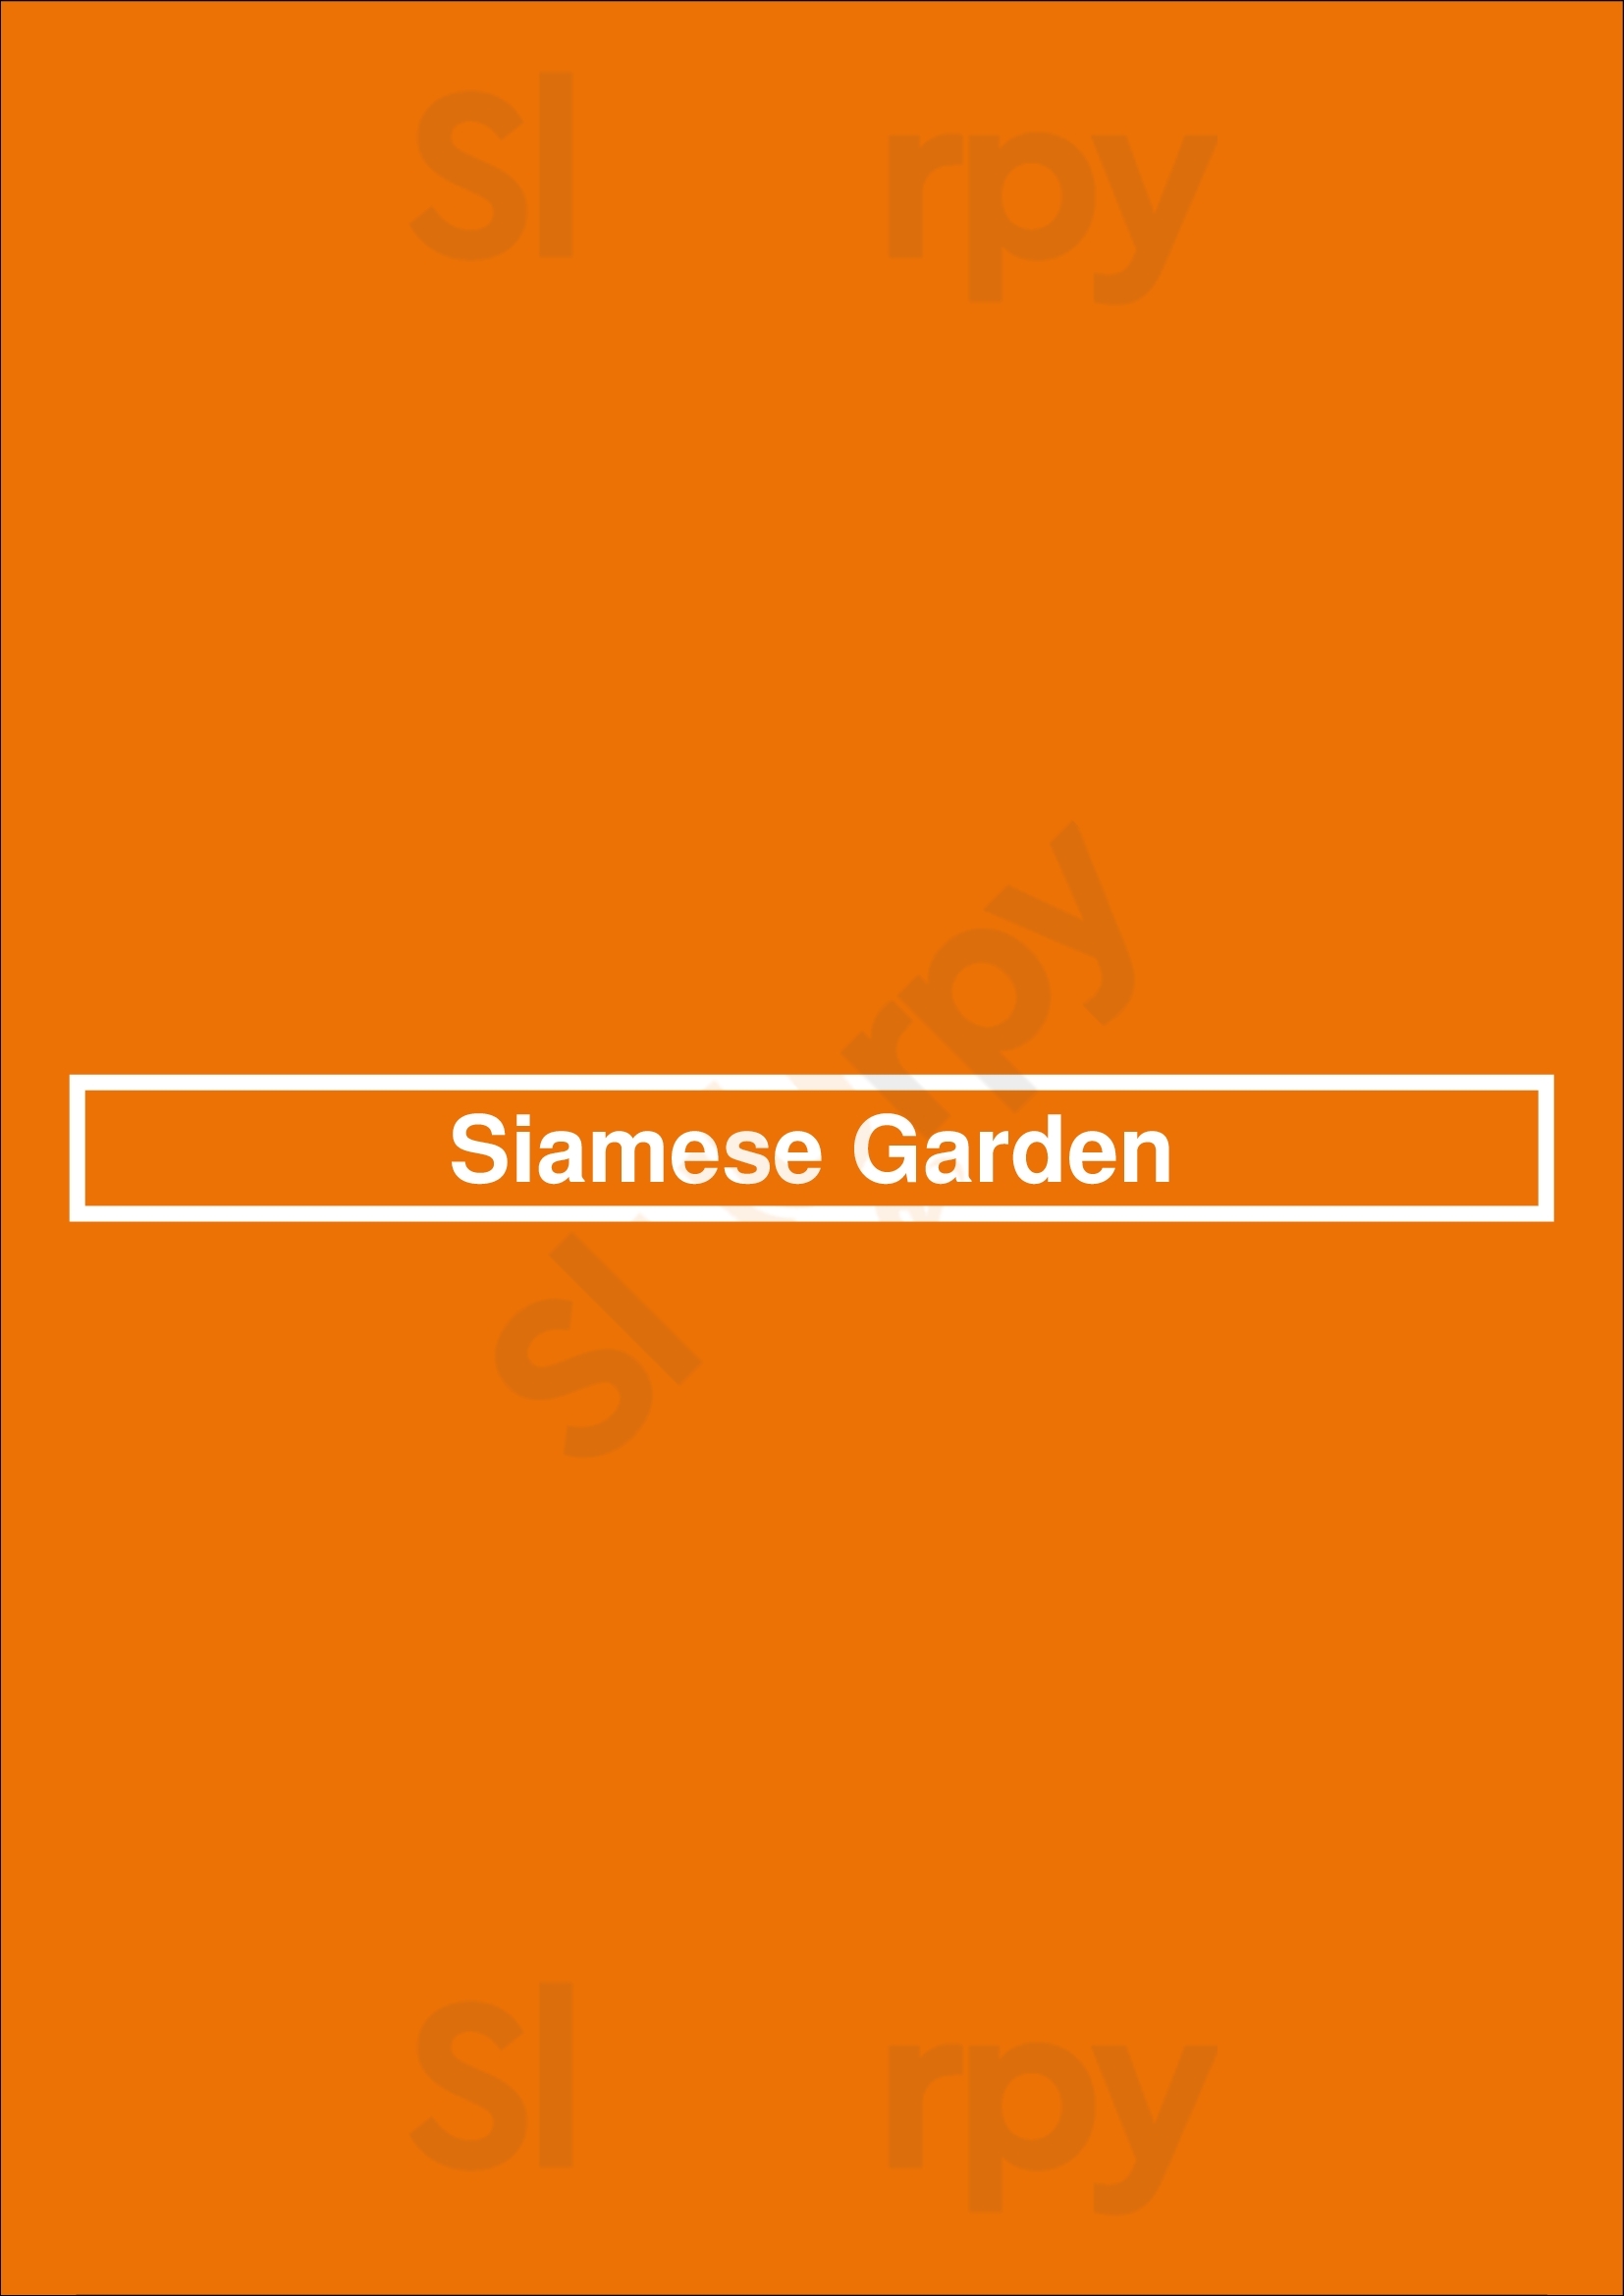 Siamese Garden Los Angeles Menu - 1